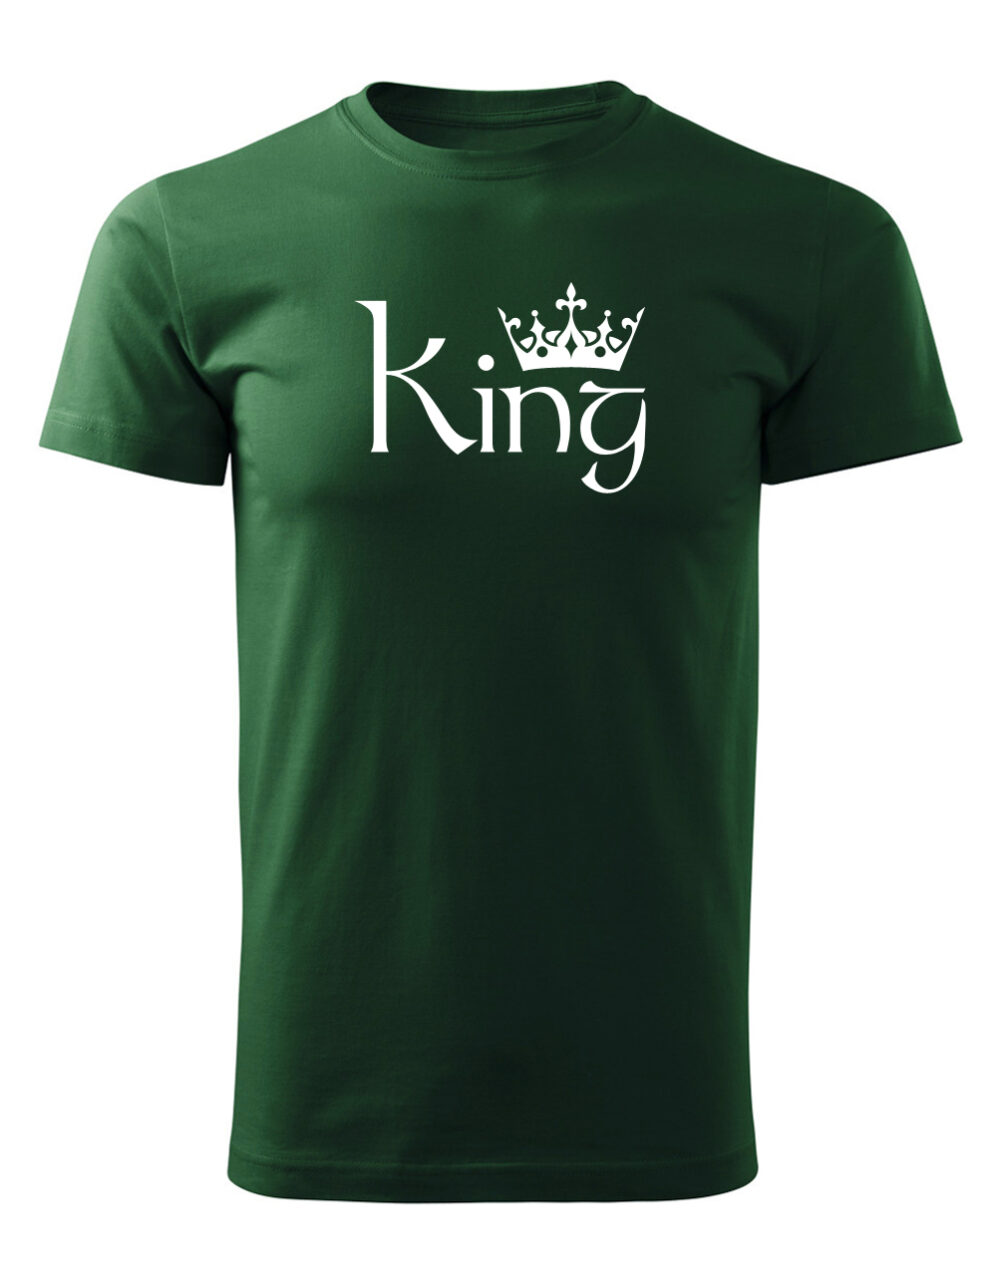 Pásnké tričko s potiskem King lahvově zelená